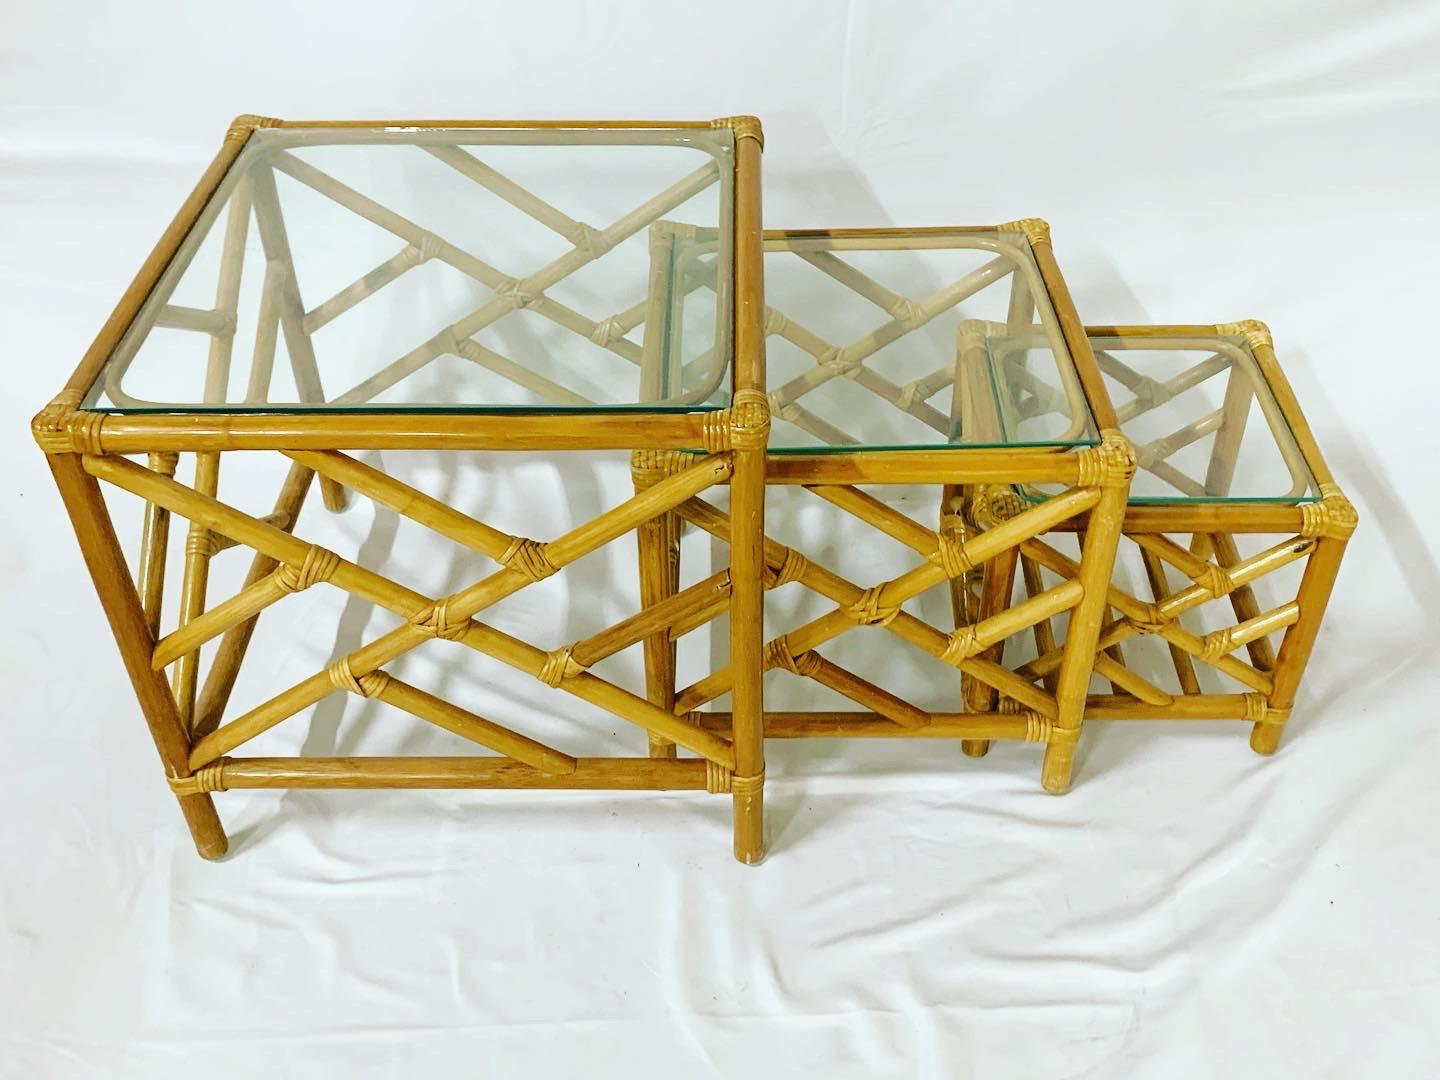 Nesting-Tische aus Bambus und Rattan mit chinesischem Chippendale-Design und Glasplatten. Es handelt sich um insgesamt drei Tische, die perfekt ineinander passen.
Der größte Tisch misst: 22 